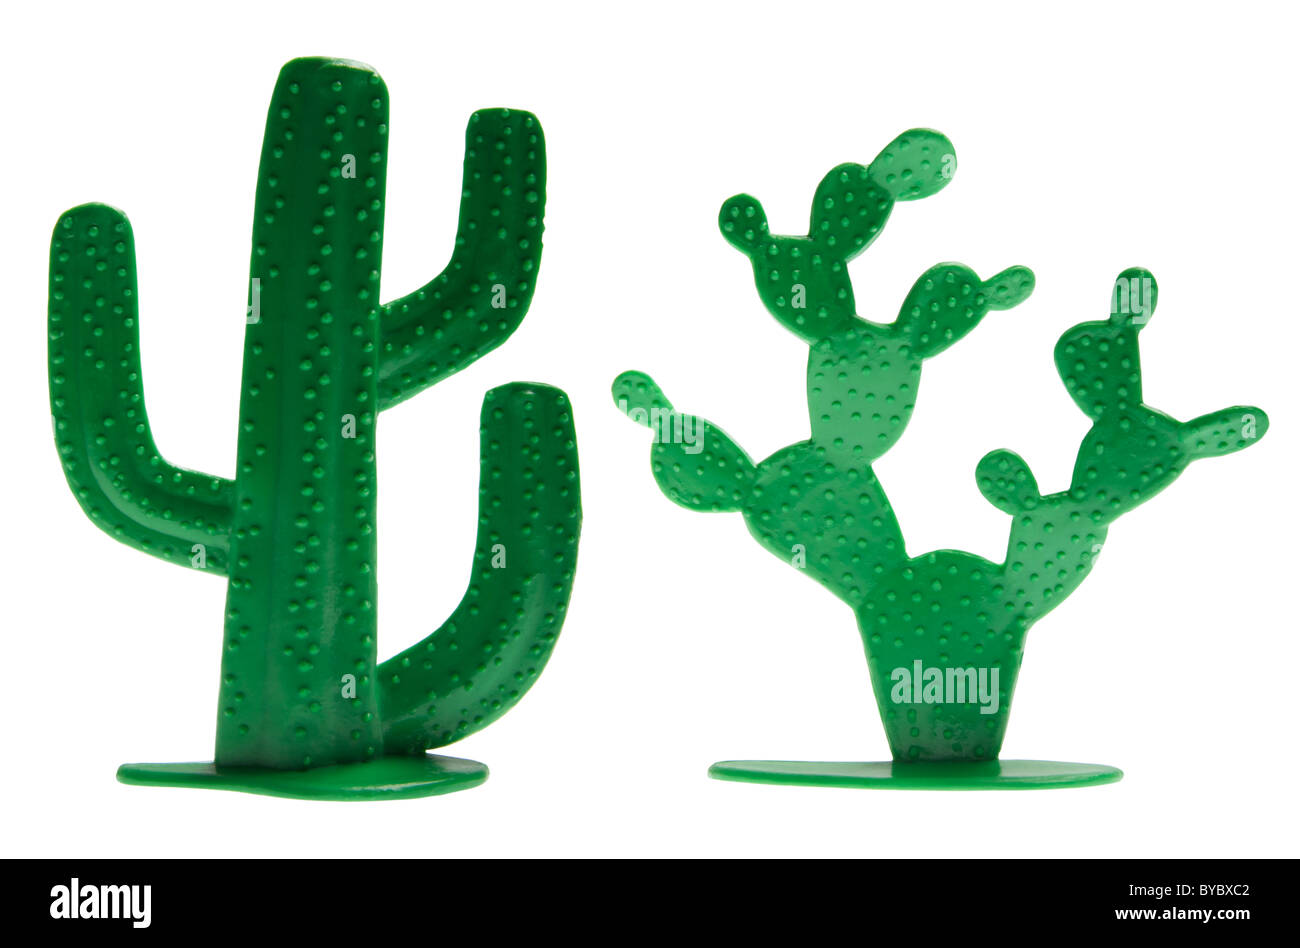 Jouet en plastique cactus sur fond blanc Banque D'Images